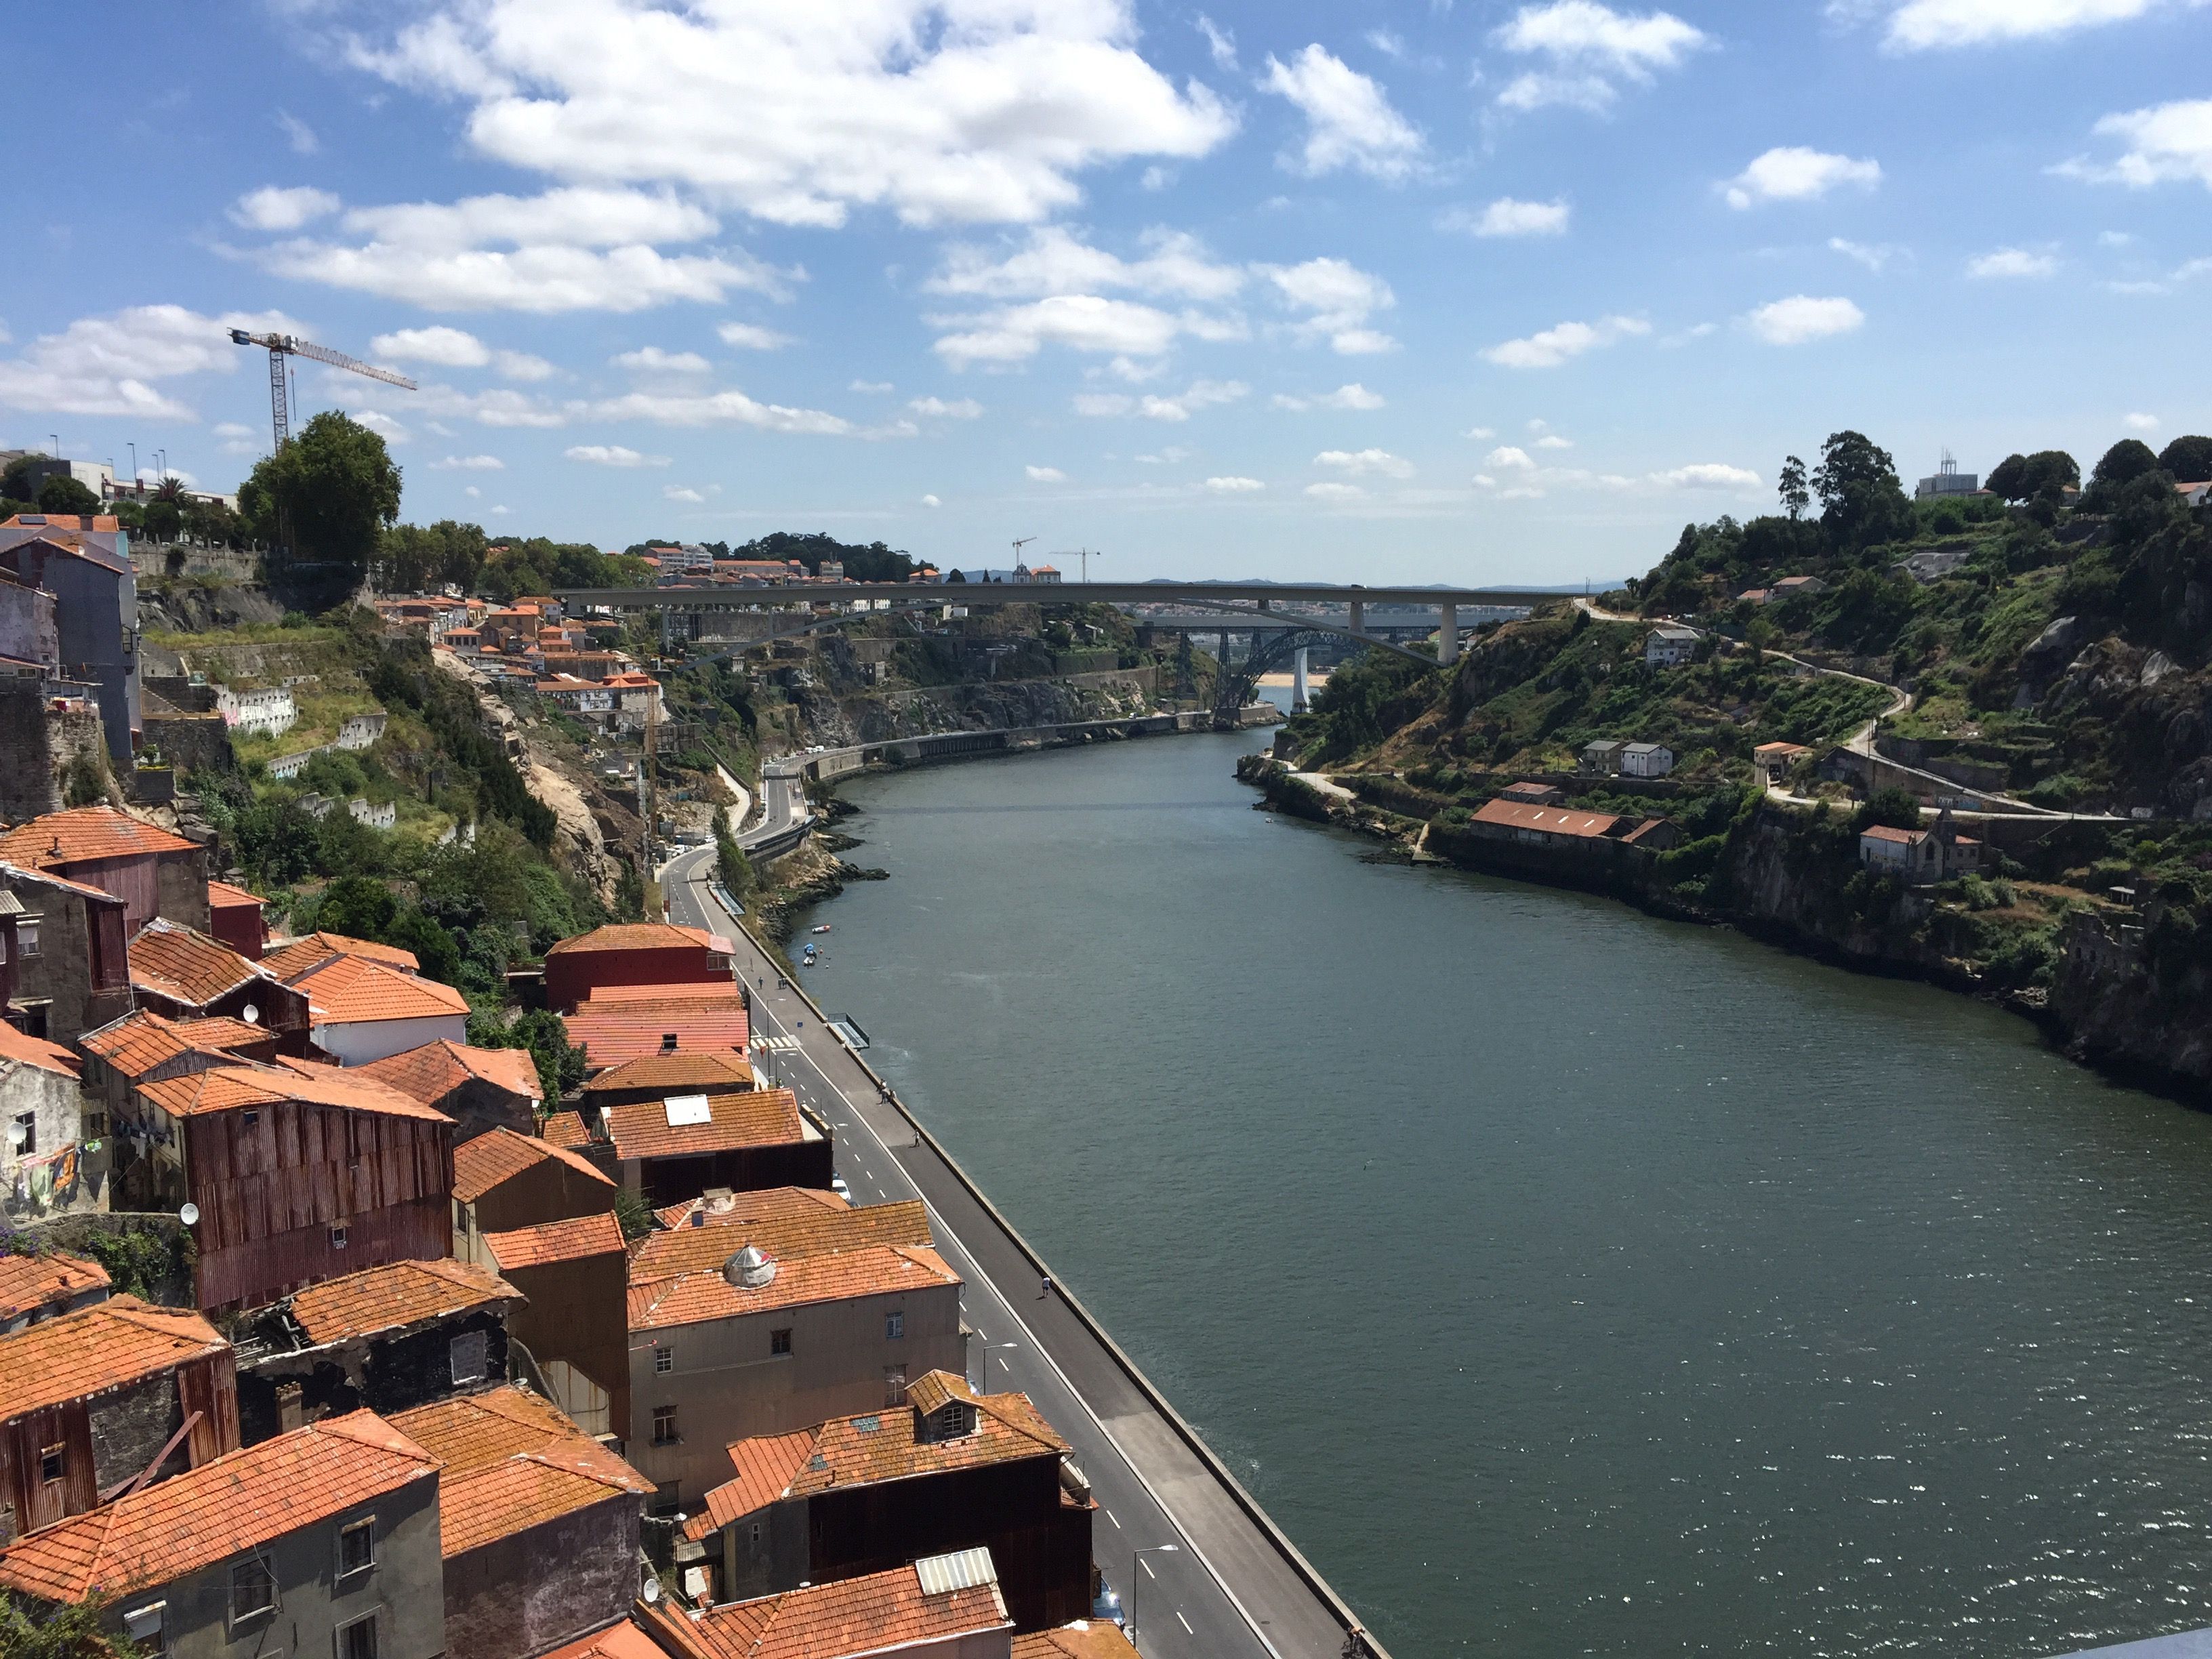 River in Porto.